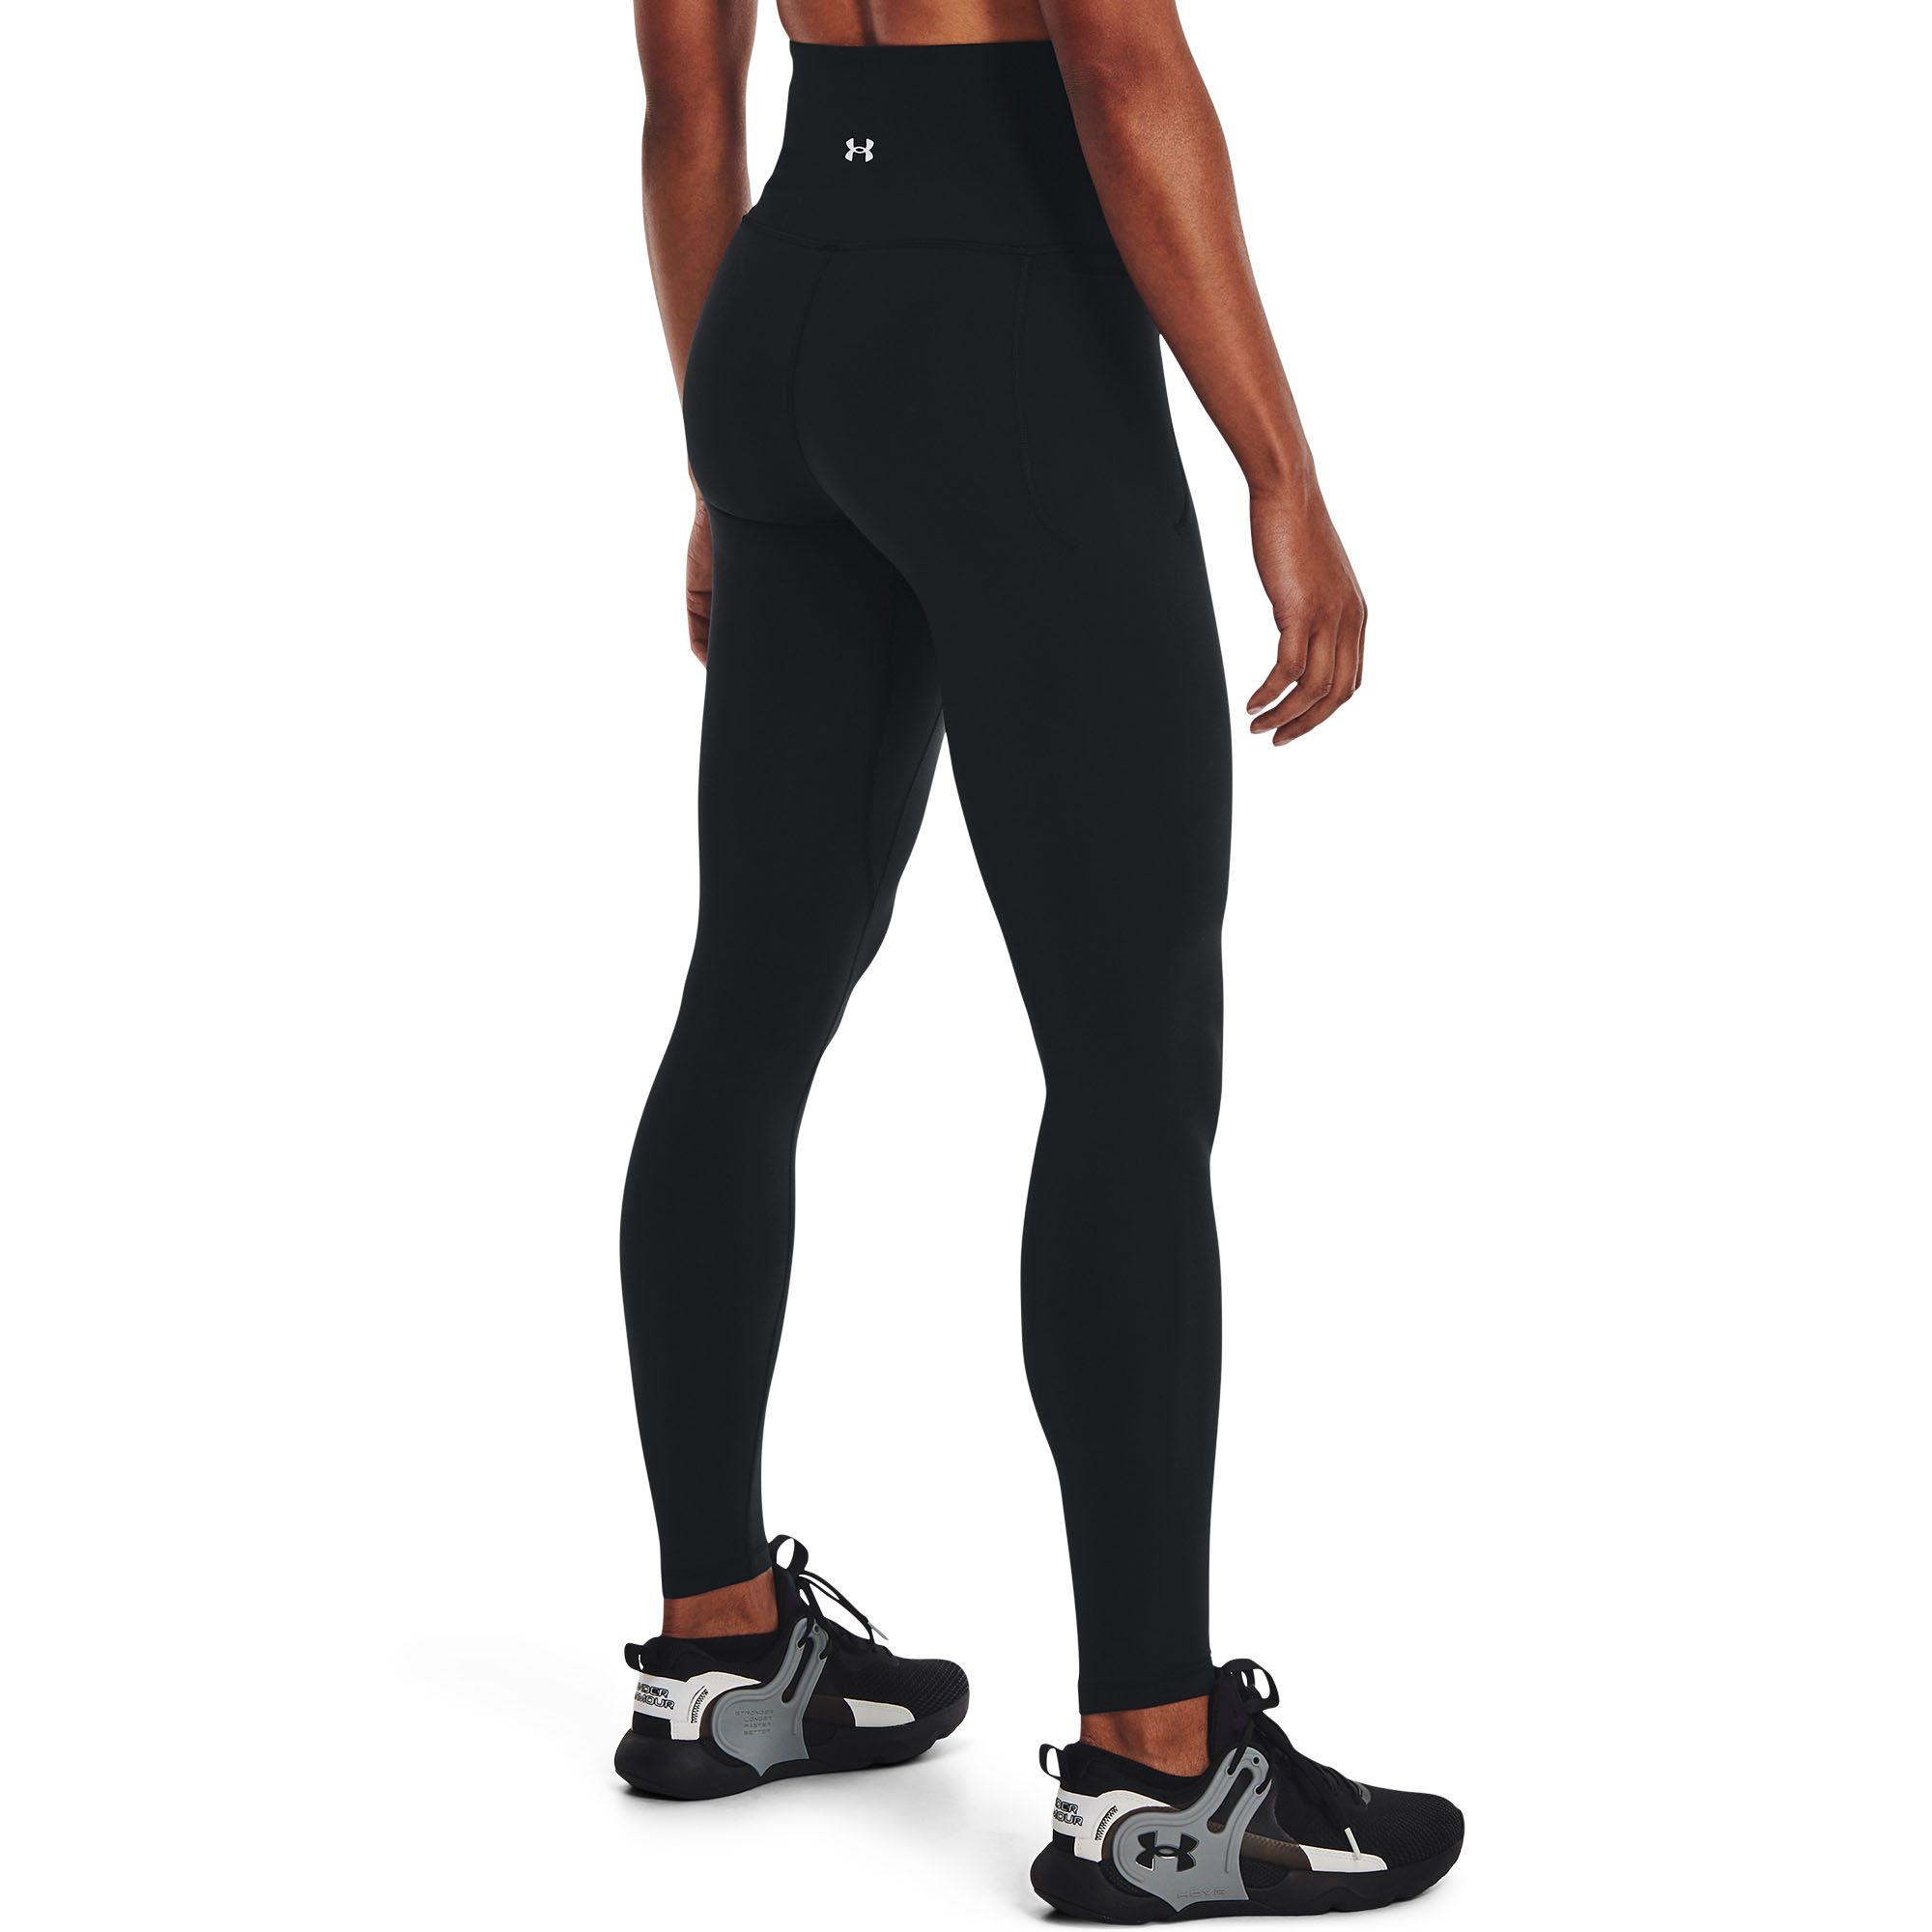 Spyder Active leggings, black, side pockets, high rise, size M